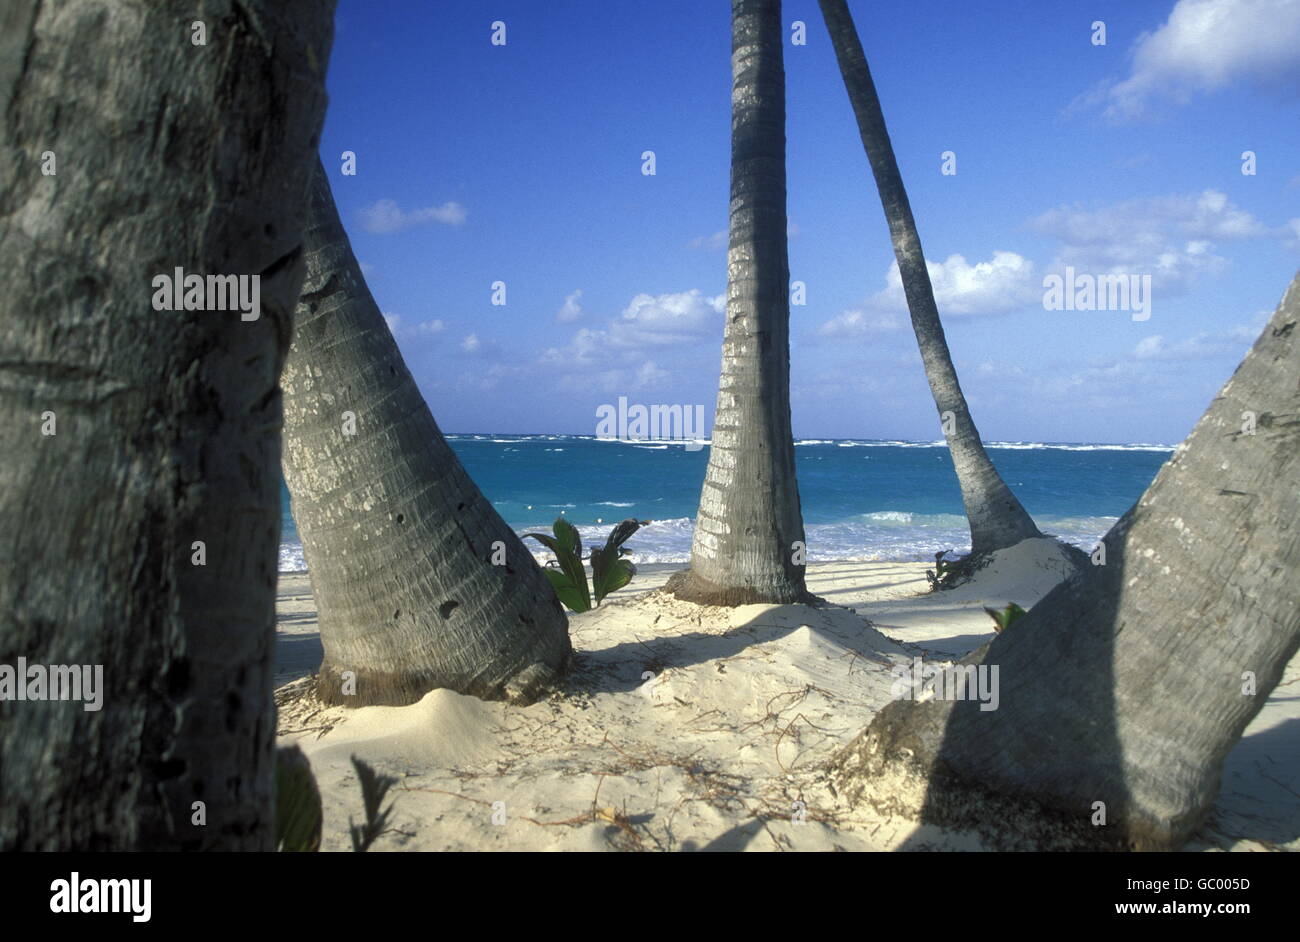 Une plage dans le village de Las Terrenas sur Samanaon en République Dominicaine dans la mer des Caraïbes en Amérique latine. Banque D'Images